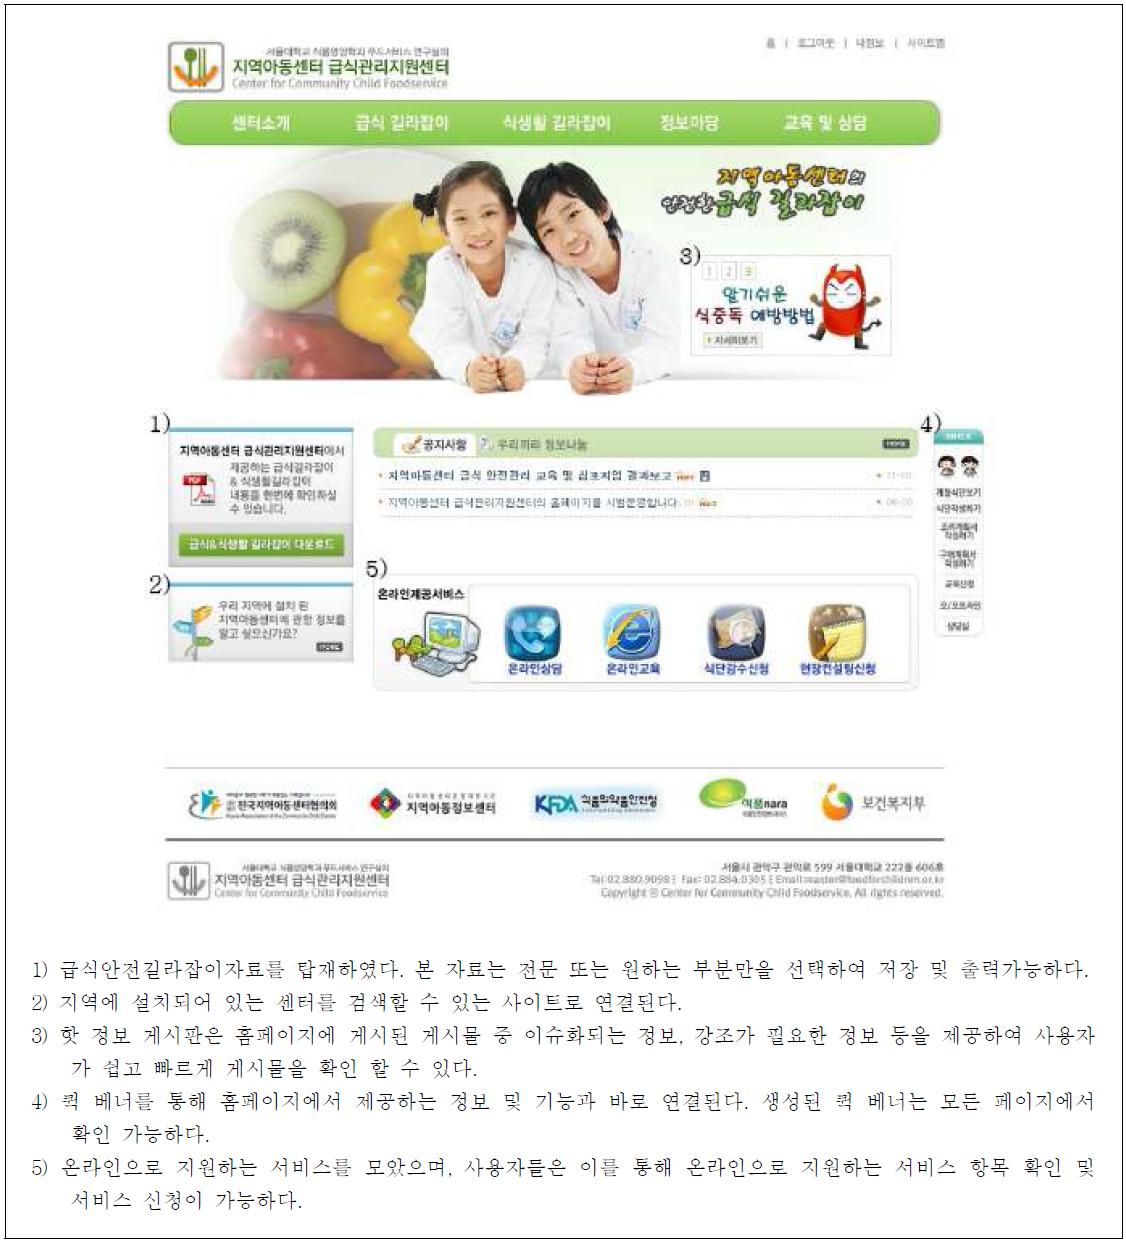 홈페이지 메인화면(Main page of homepage for community child food service)